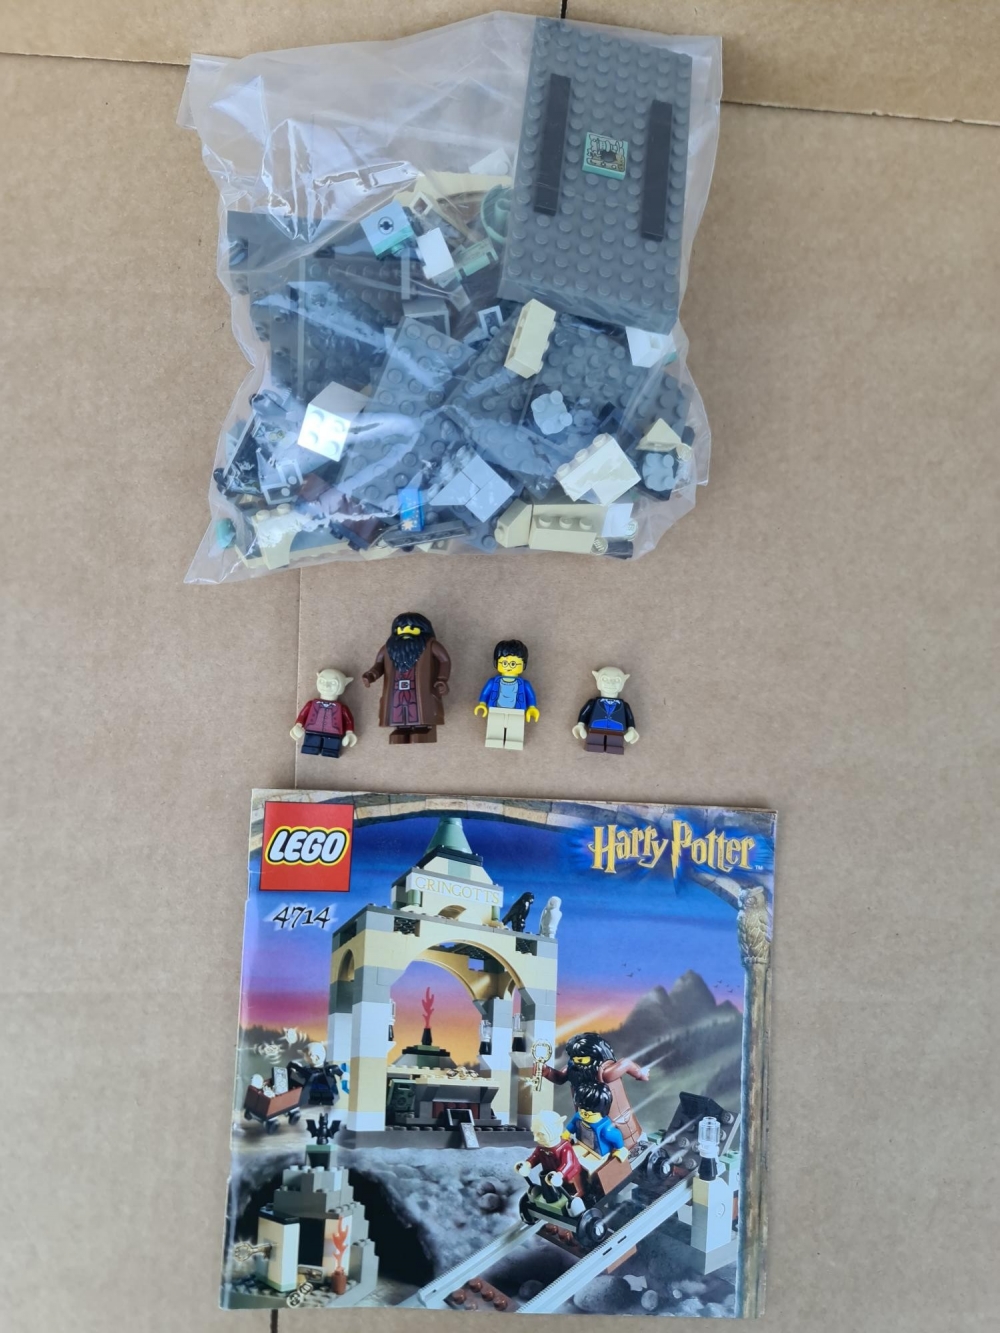 Sett 4714 fra Lego Harry Potter : Sorcerer's Stone serien.
Meget pent.
Komplett med manual.